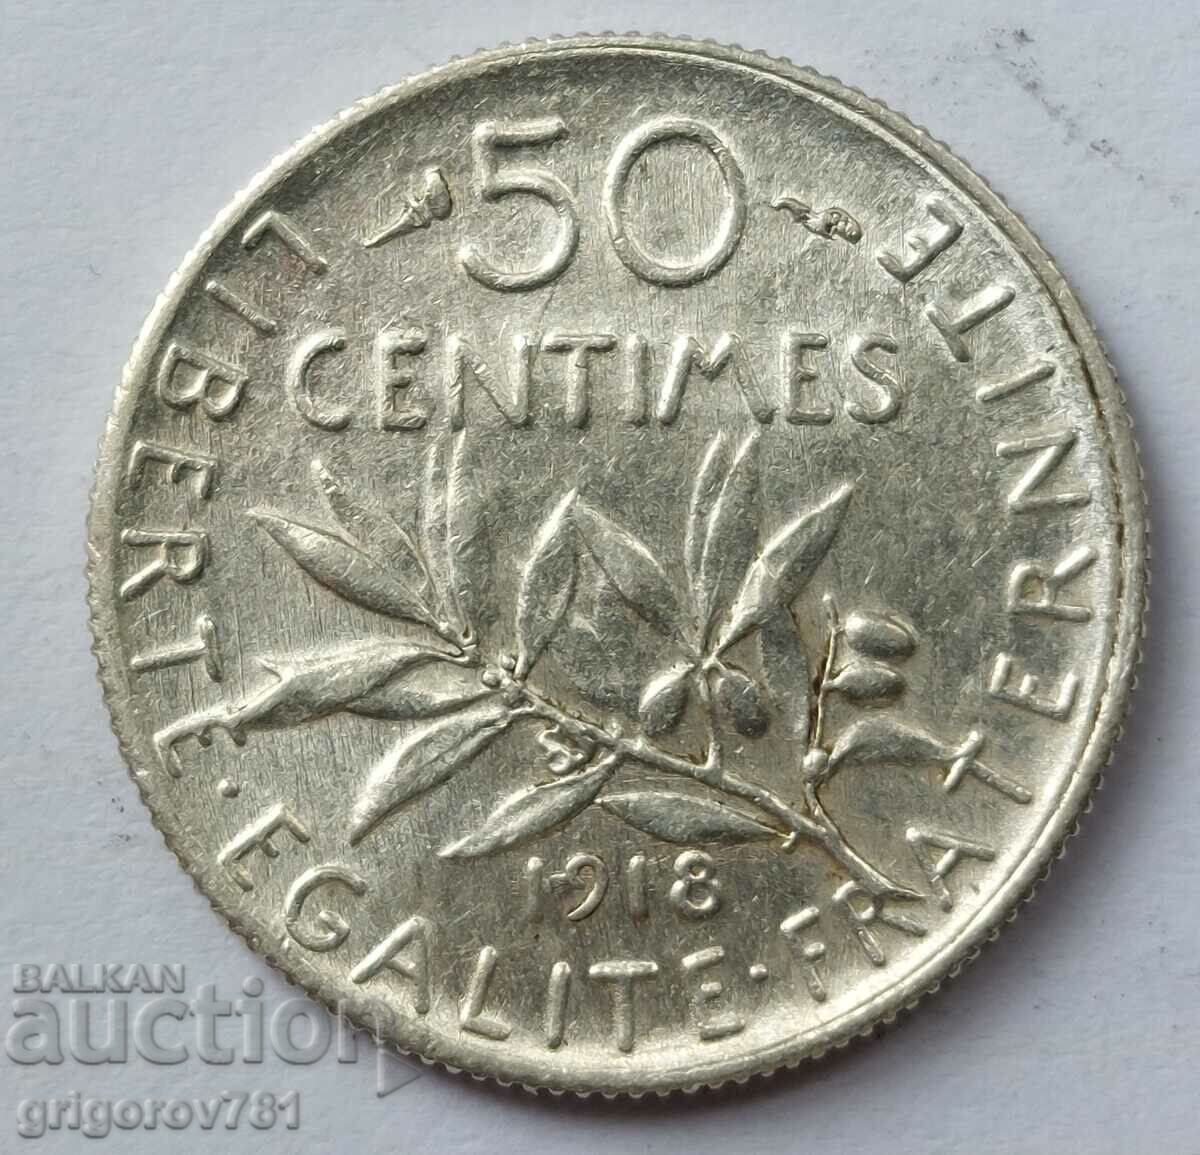 Ασημένιο 50 εκατοστά Γαλλία 1918 - ασημένιο νόμισμα №64